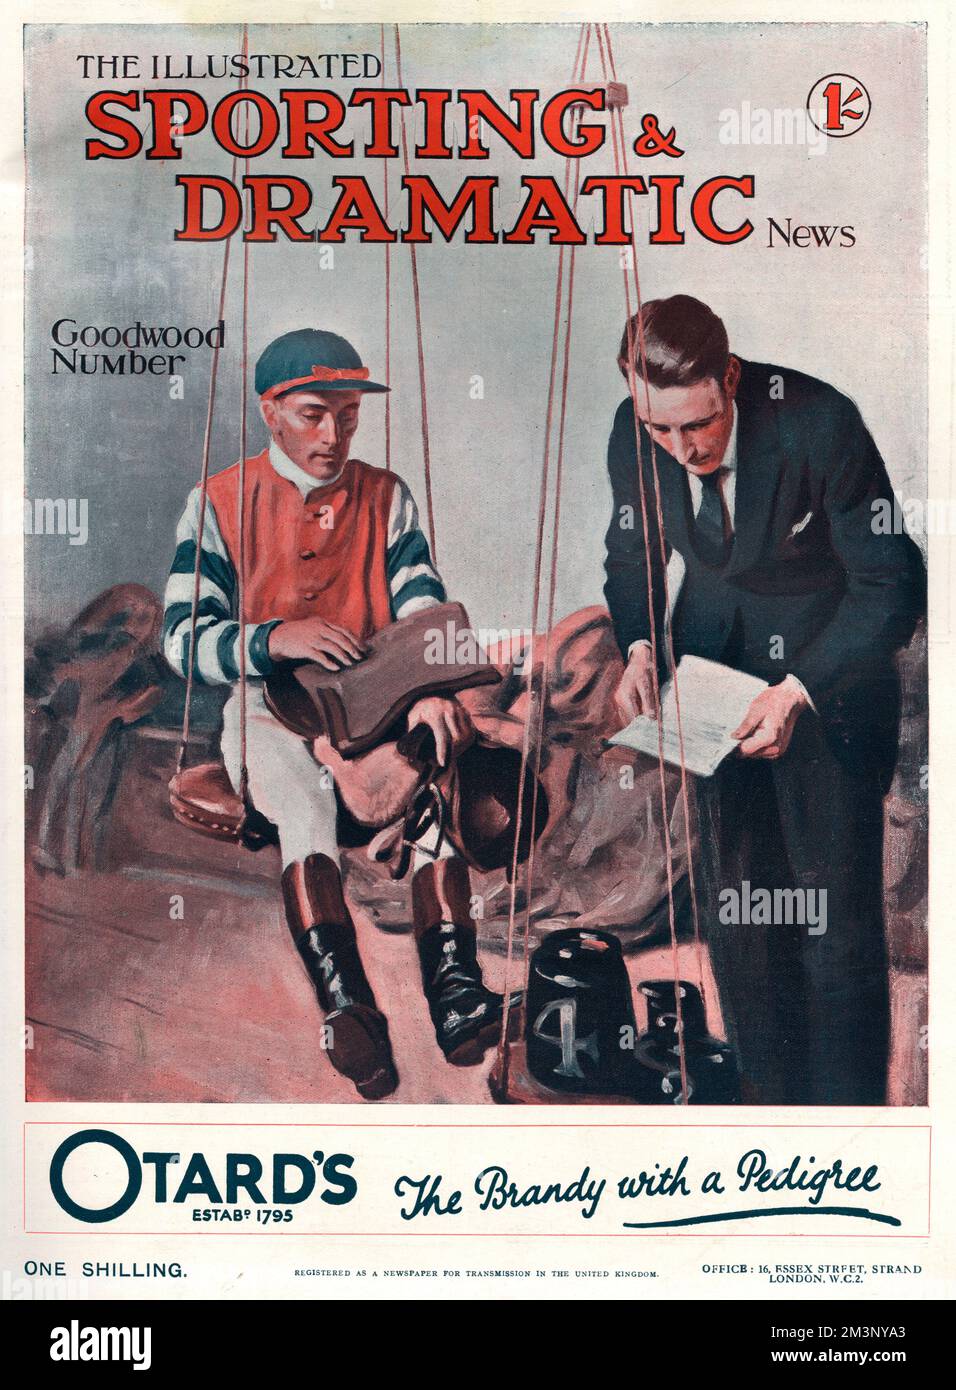 Couverture du numéro de Goodwood de l'Illustrated Sporting and Dramatic News avec un jockey dans la salle de pesée avant une course. Date: 1928 Banque D'Images